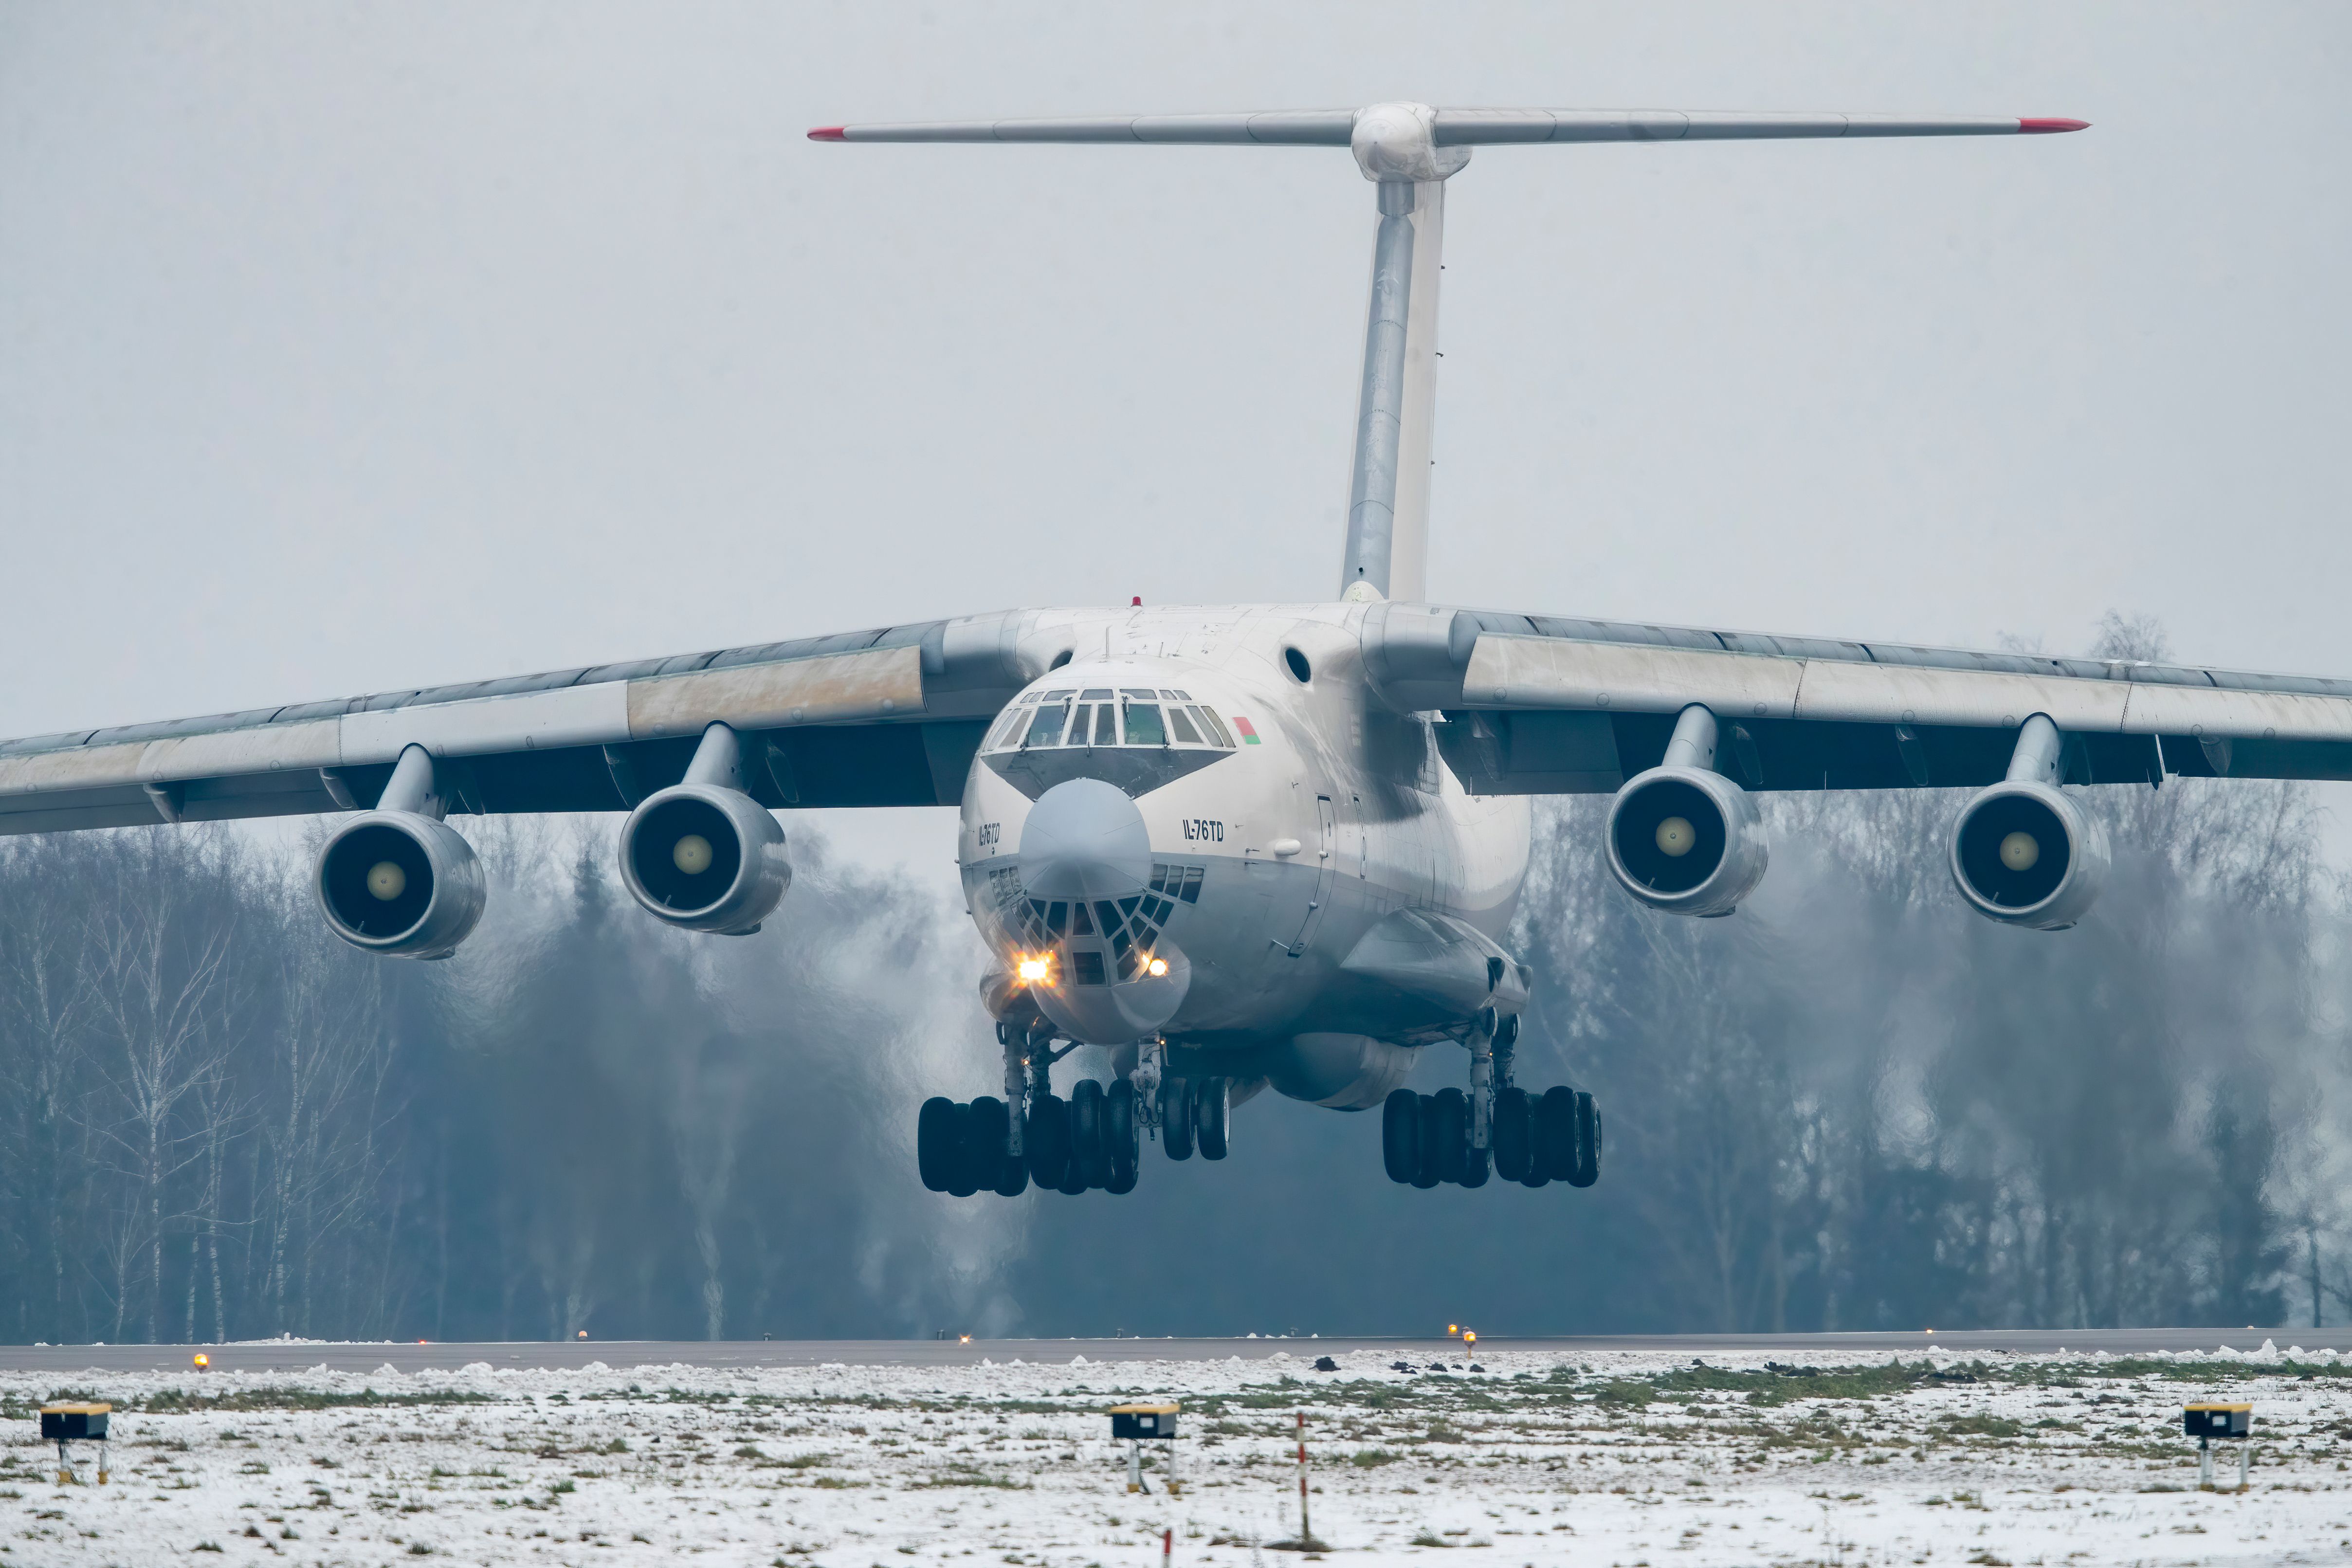 Kaunas Lithuania 2021-01-25 (EW-383TH) Ilyushin Il-76TD - Rubystar